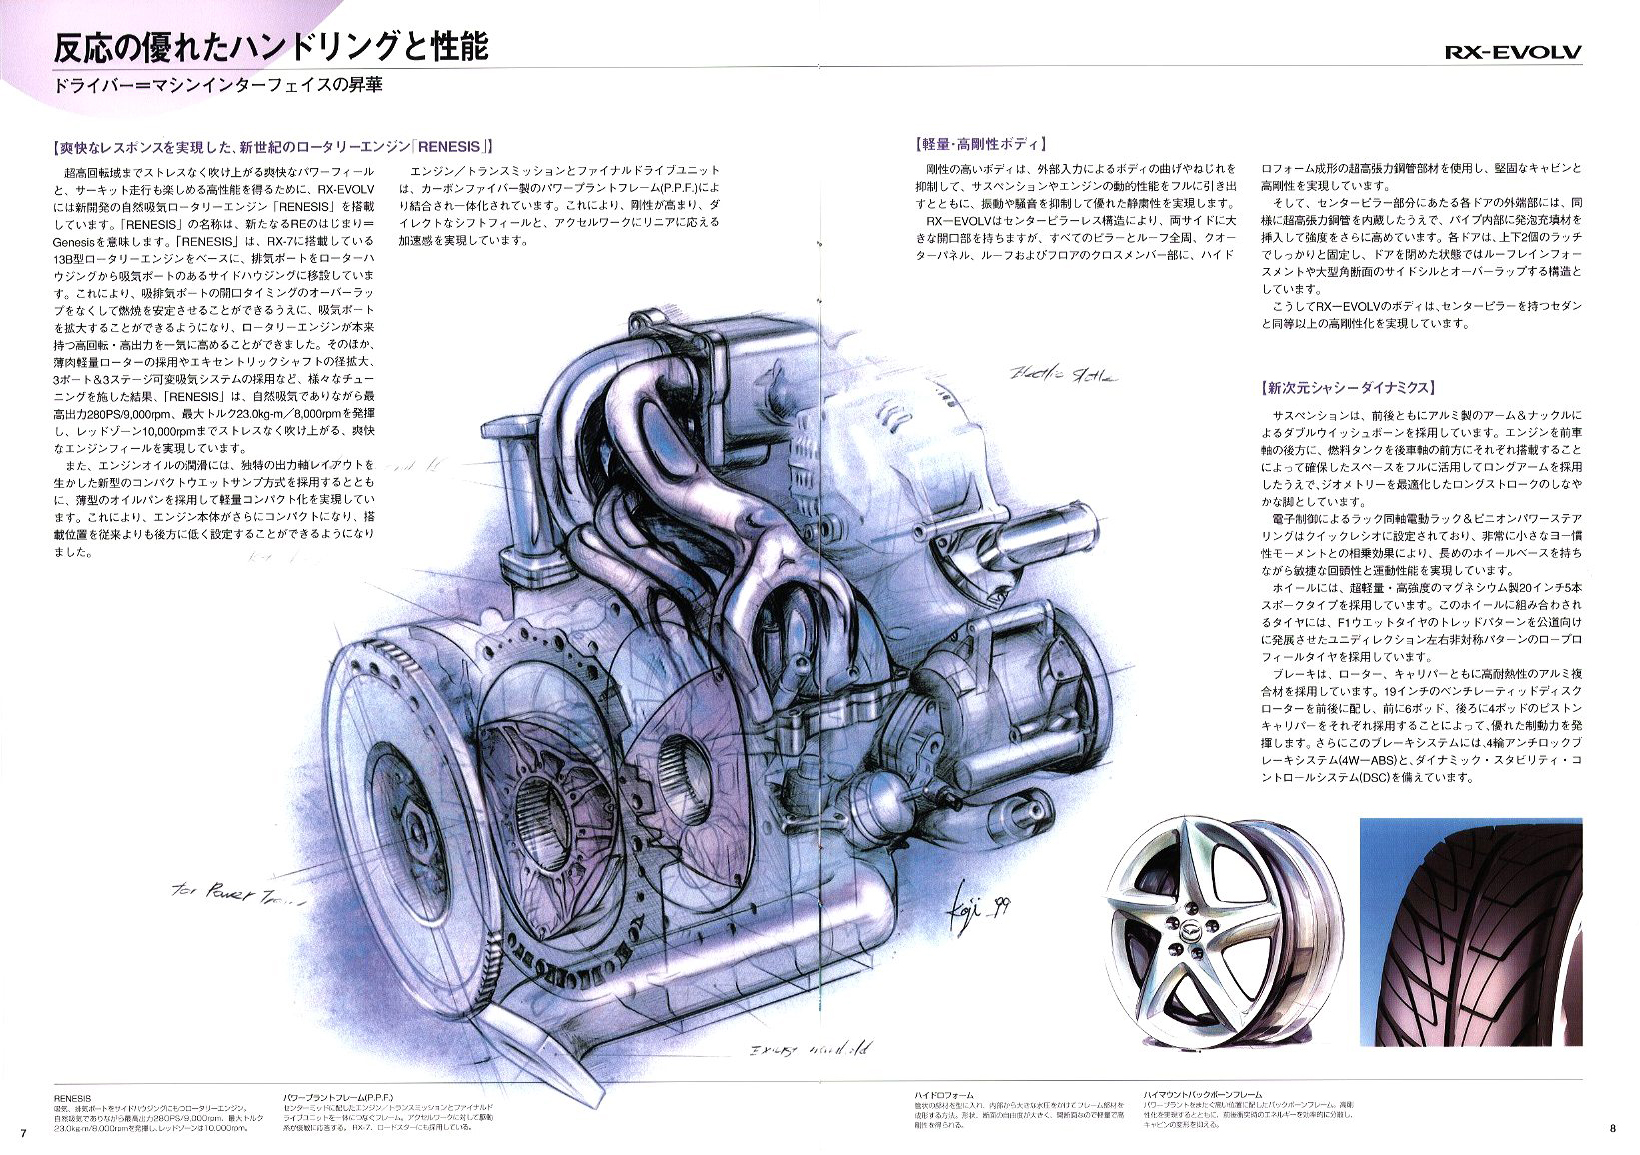 Mazda RX-Evolv, 1999 - Press Information